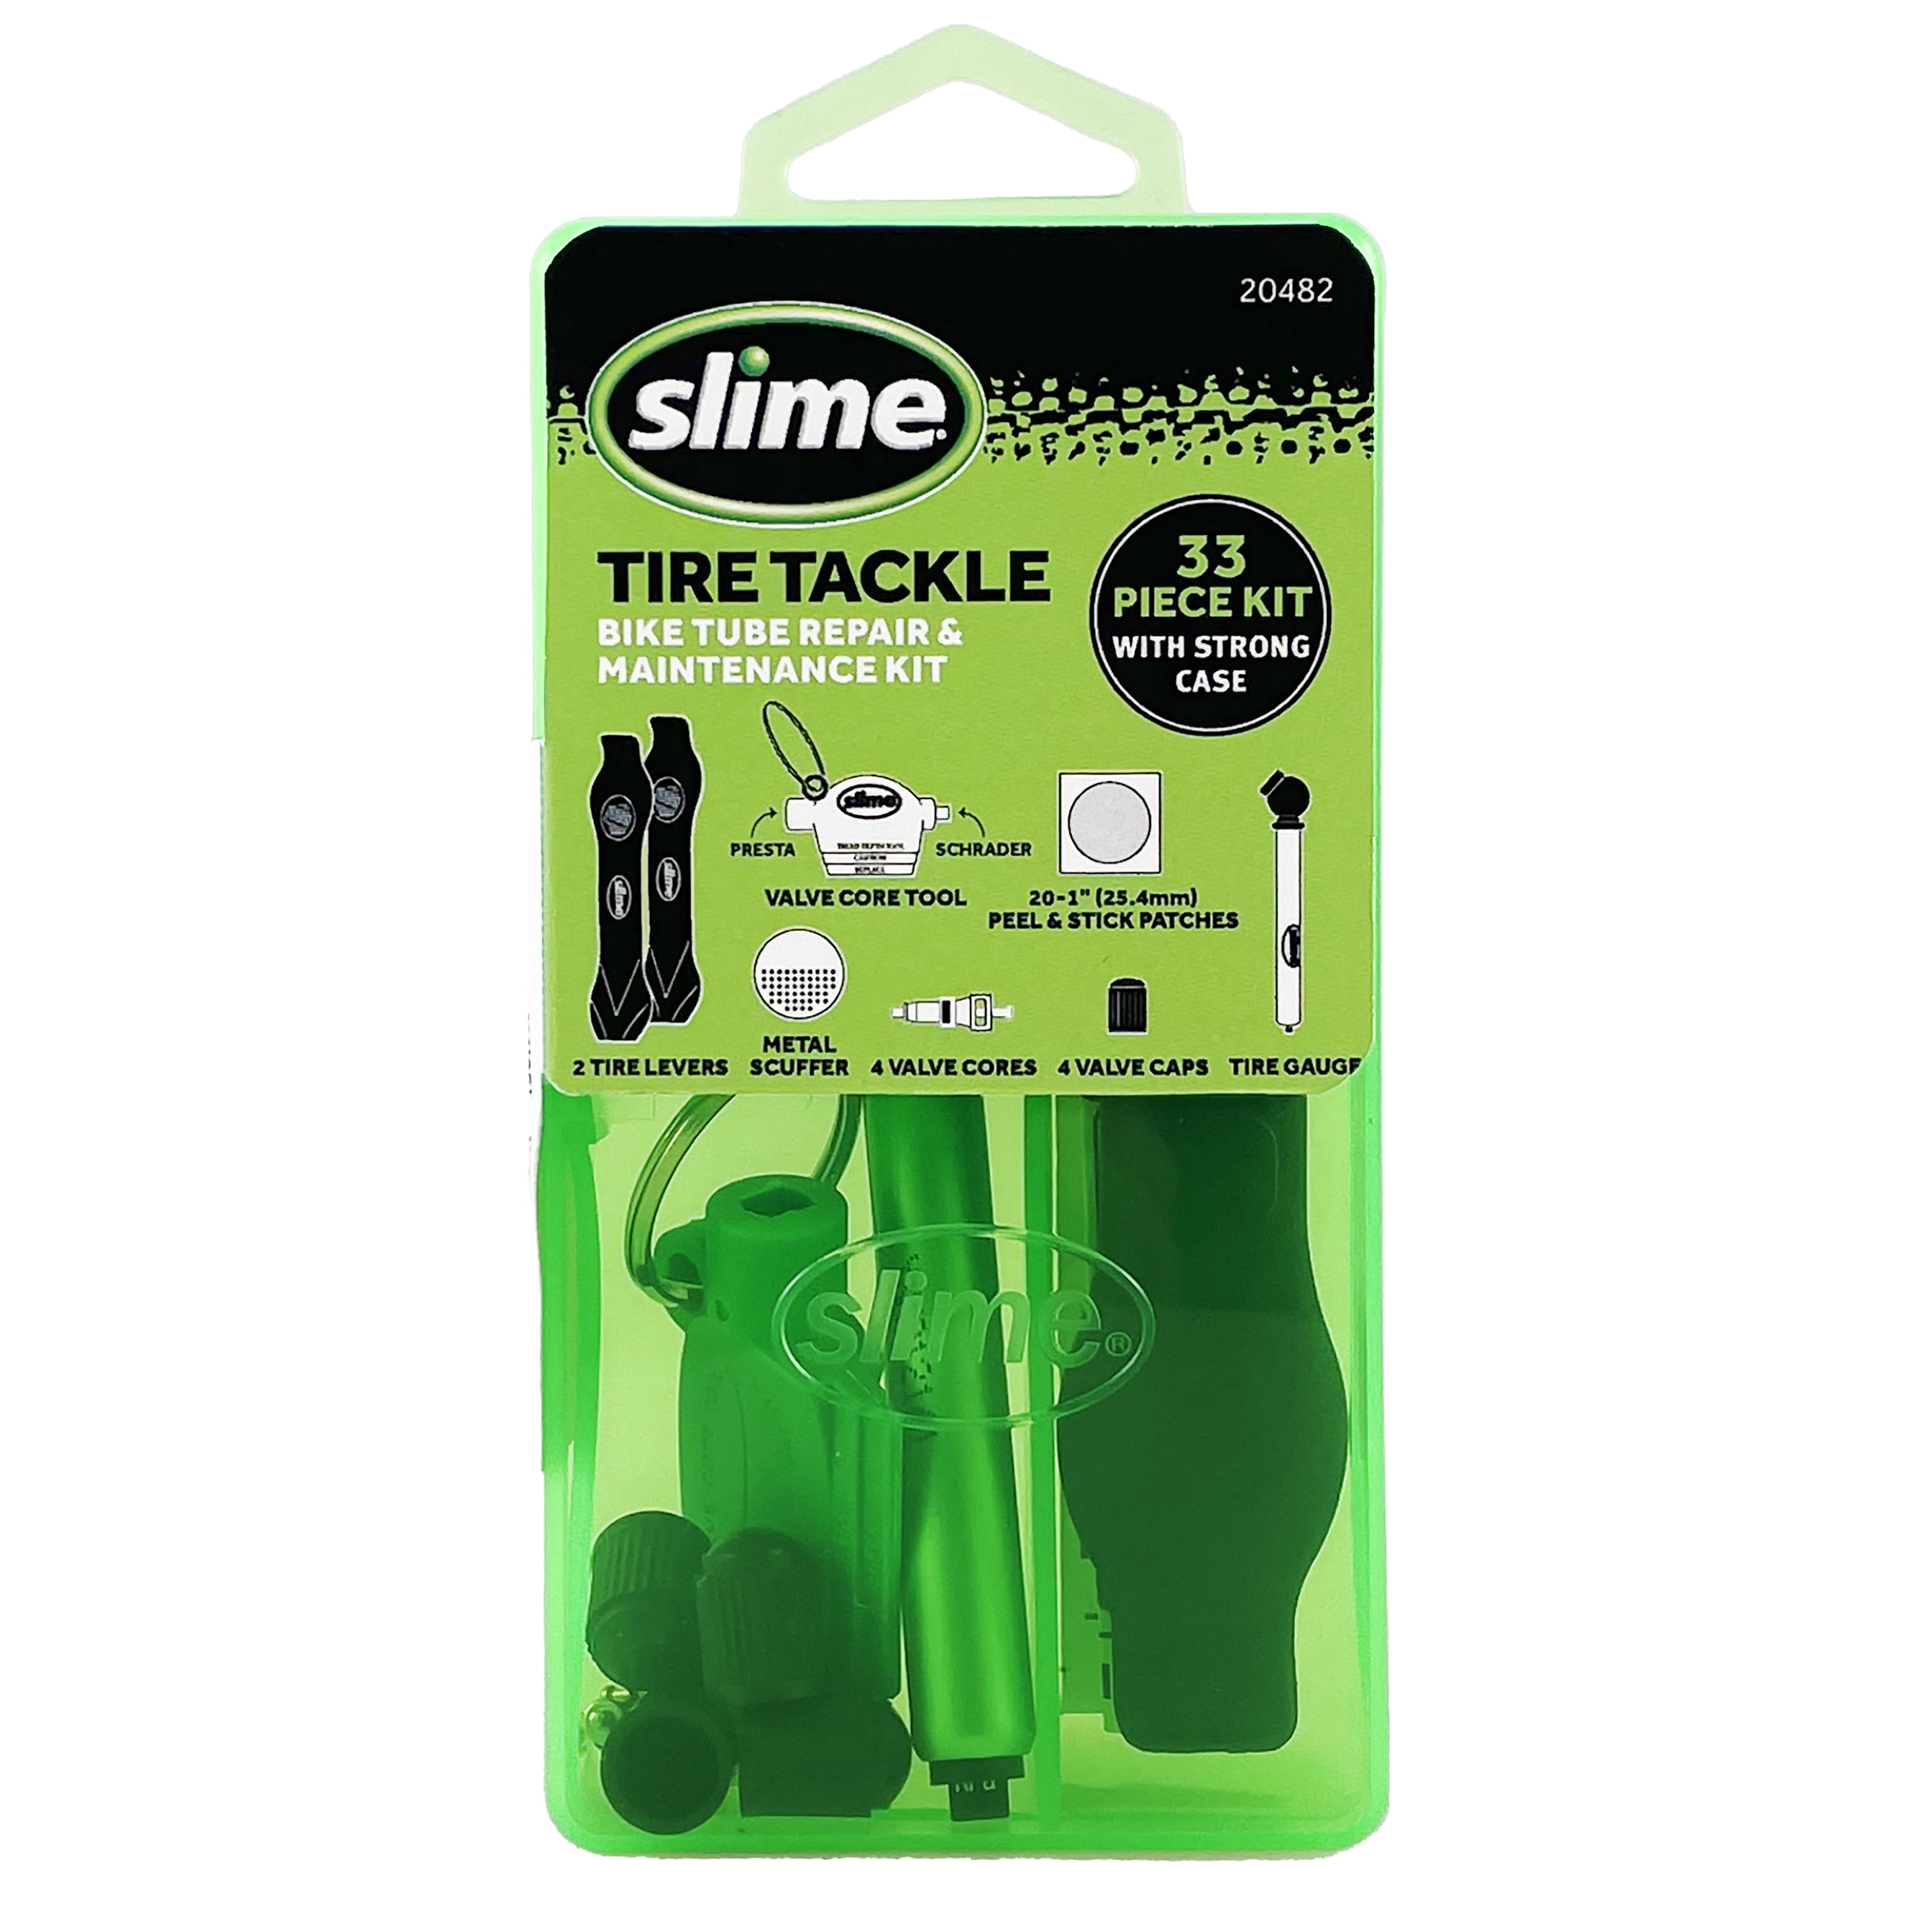 Slime Tire Tackle Bike Tube Repair & Maintenance Kit - 20482